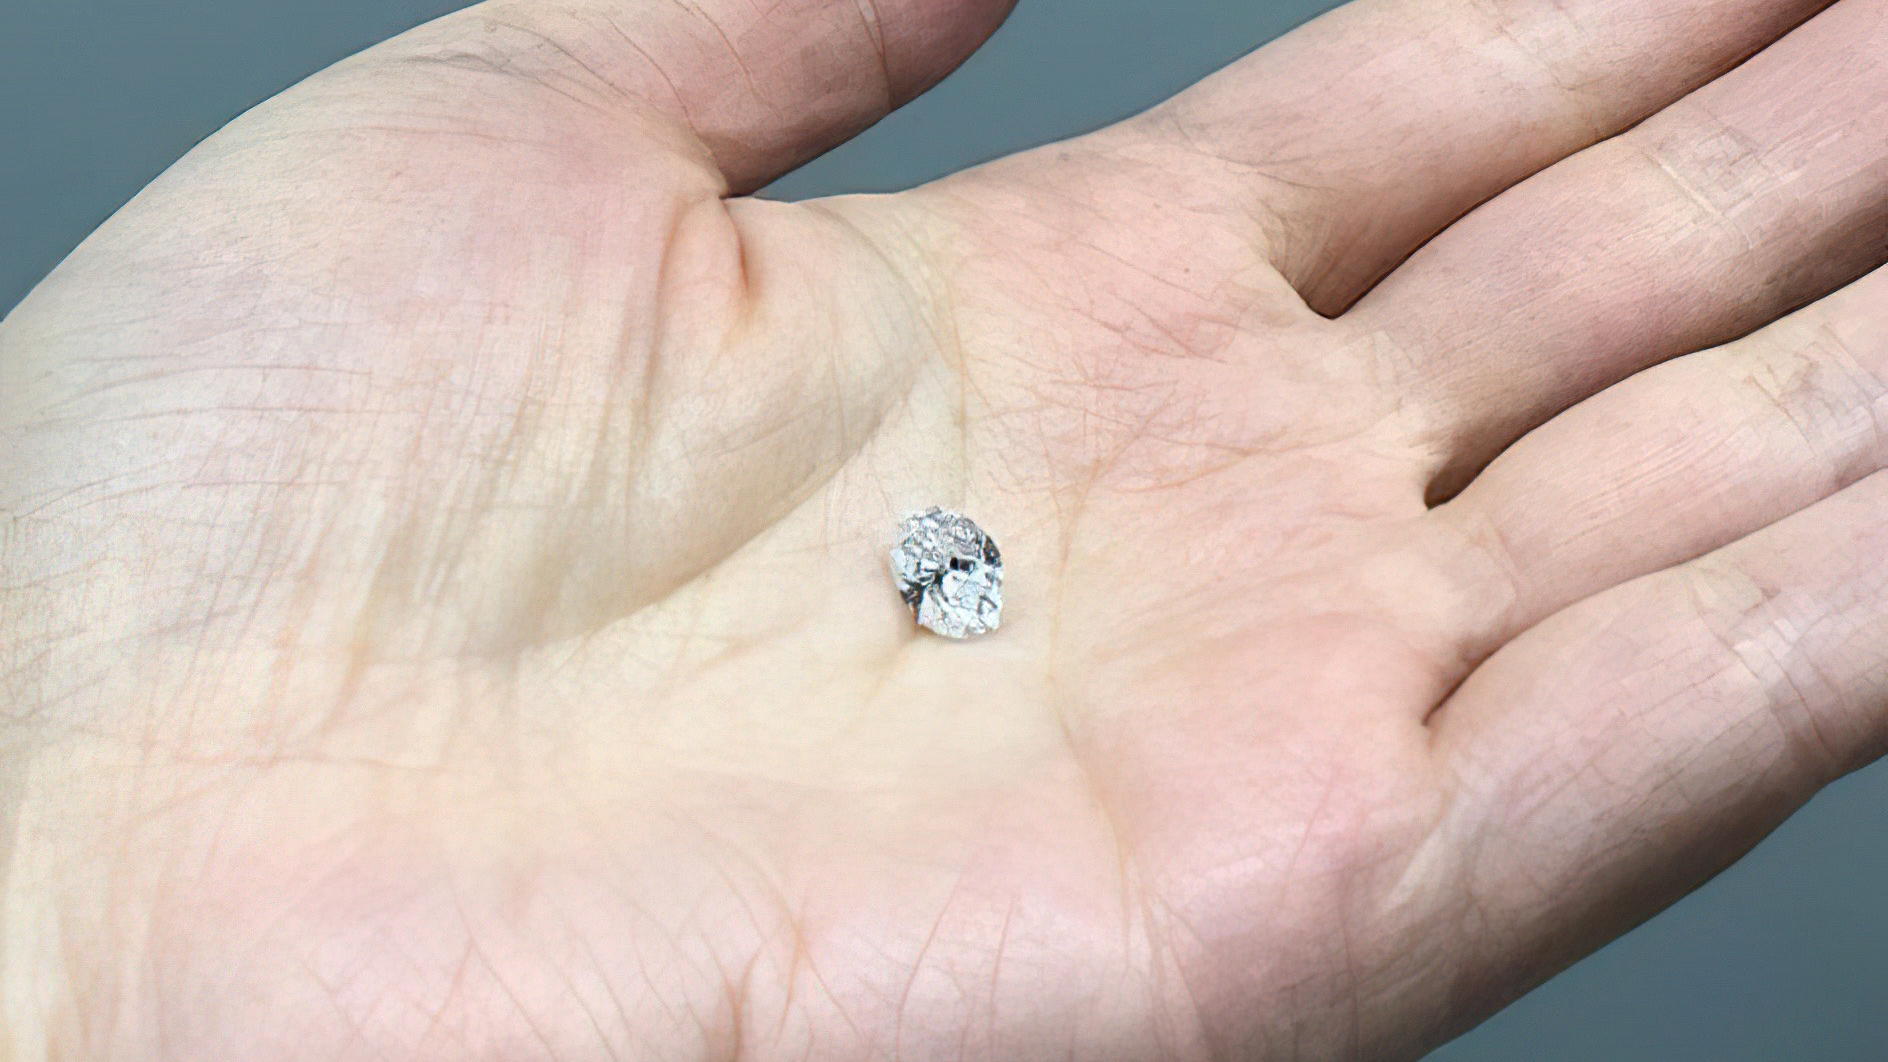 Insluitsels in deze diamant van 1,5 karaat bevatten sporen van mineralen die zich in de onderste mantel hebben gevormd.